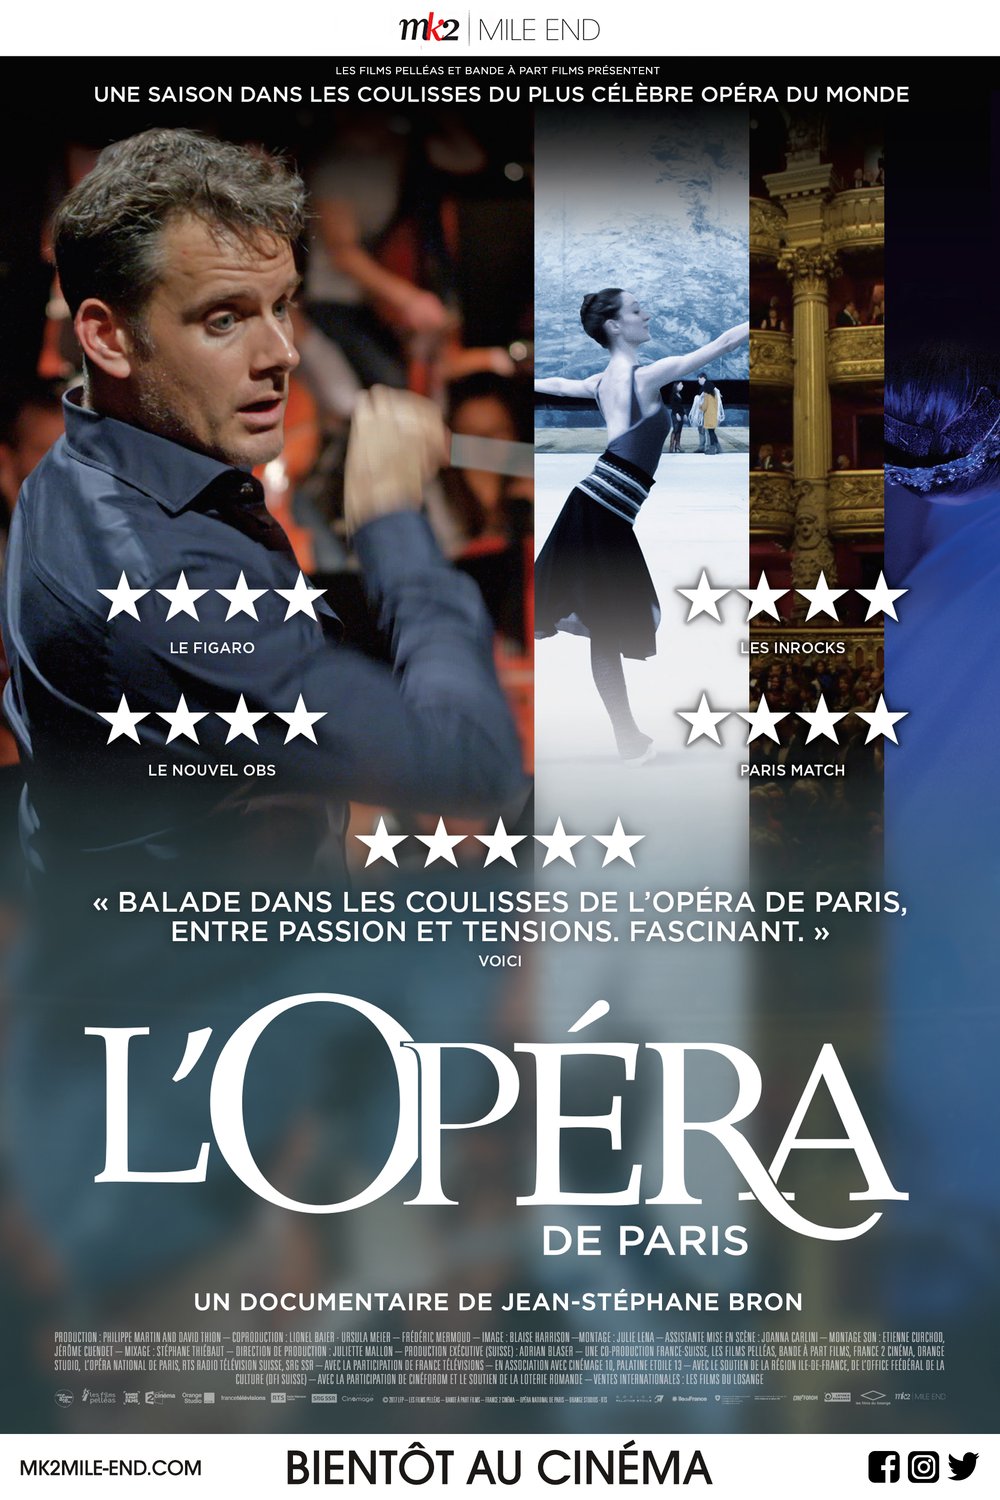 Poster of the movie L'Opéra de Paris